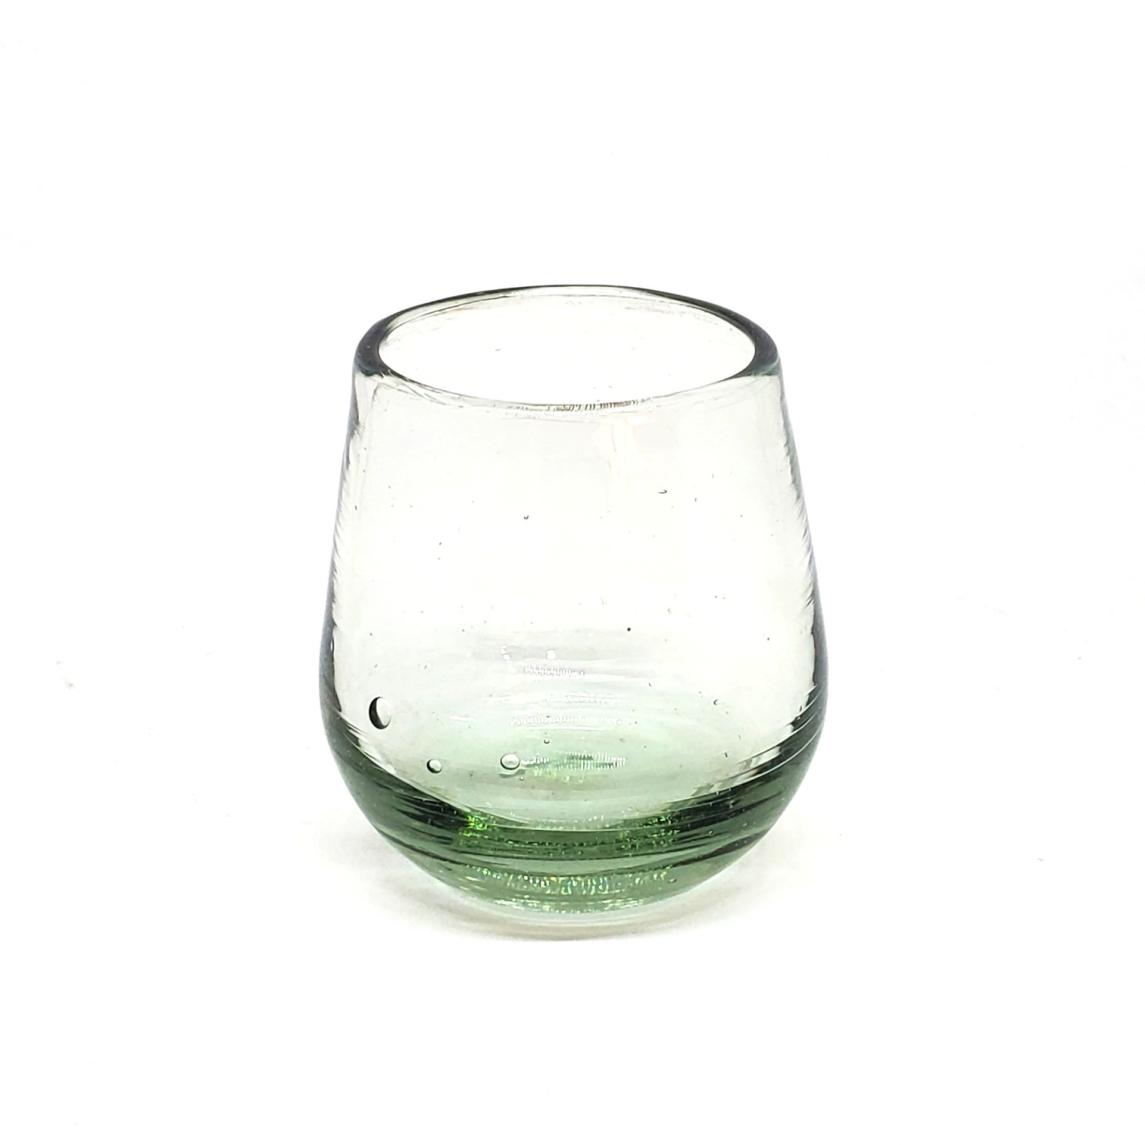 Novedades / Poly Transparente (Juego de 6) / Nuestros vasos transparentes son fabricados uno por uno a base de vidrio reciclado, haciéndolos obras de arte únicas.